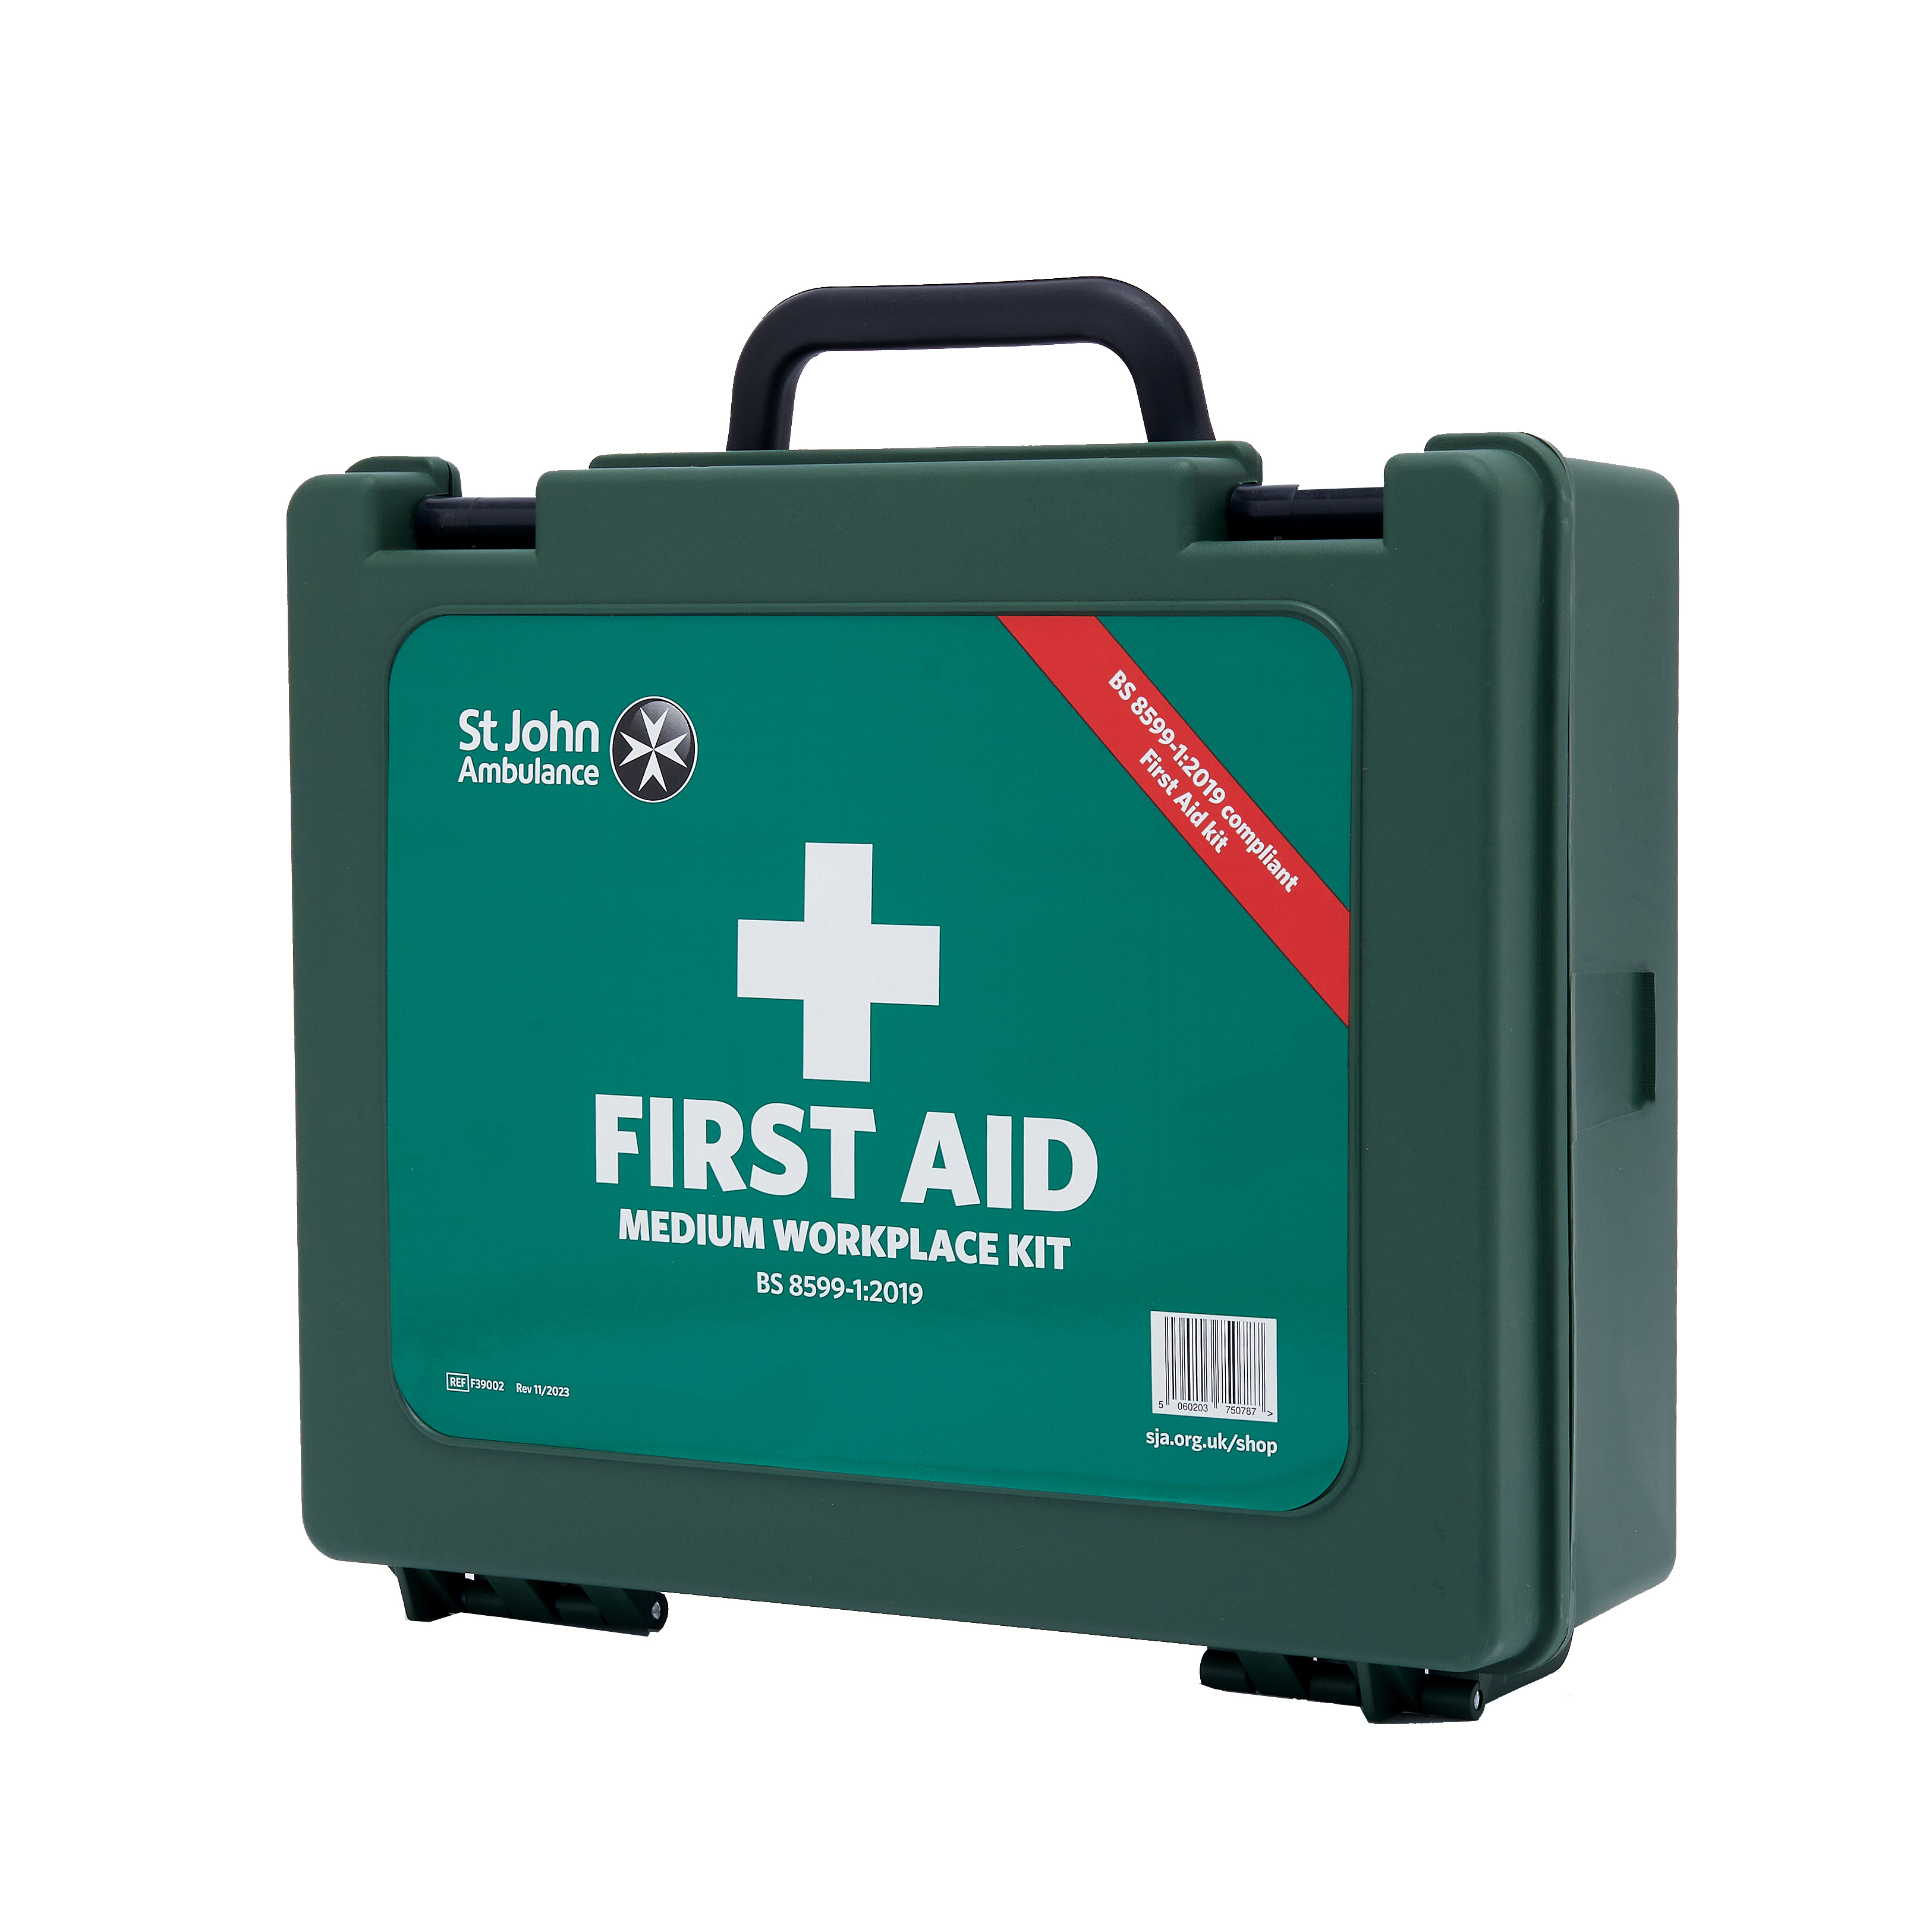 St John Ambulance Medium Workplace First Aid Kit BS-8599-1:2019